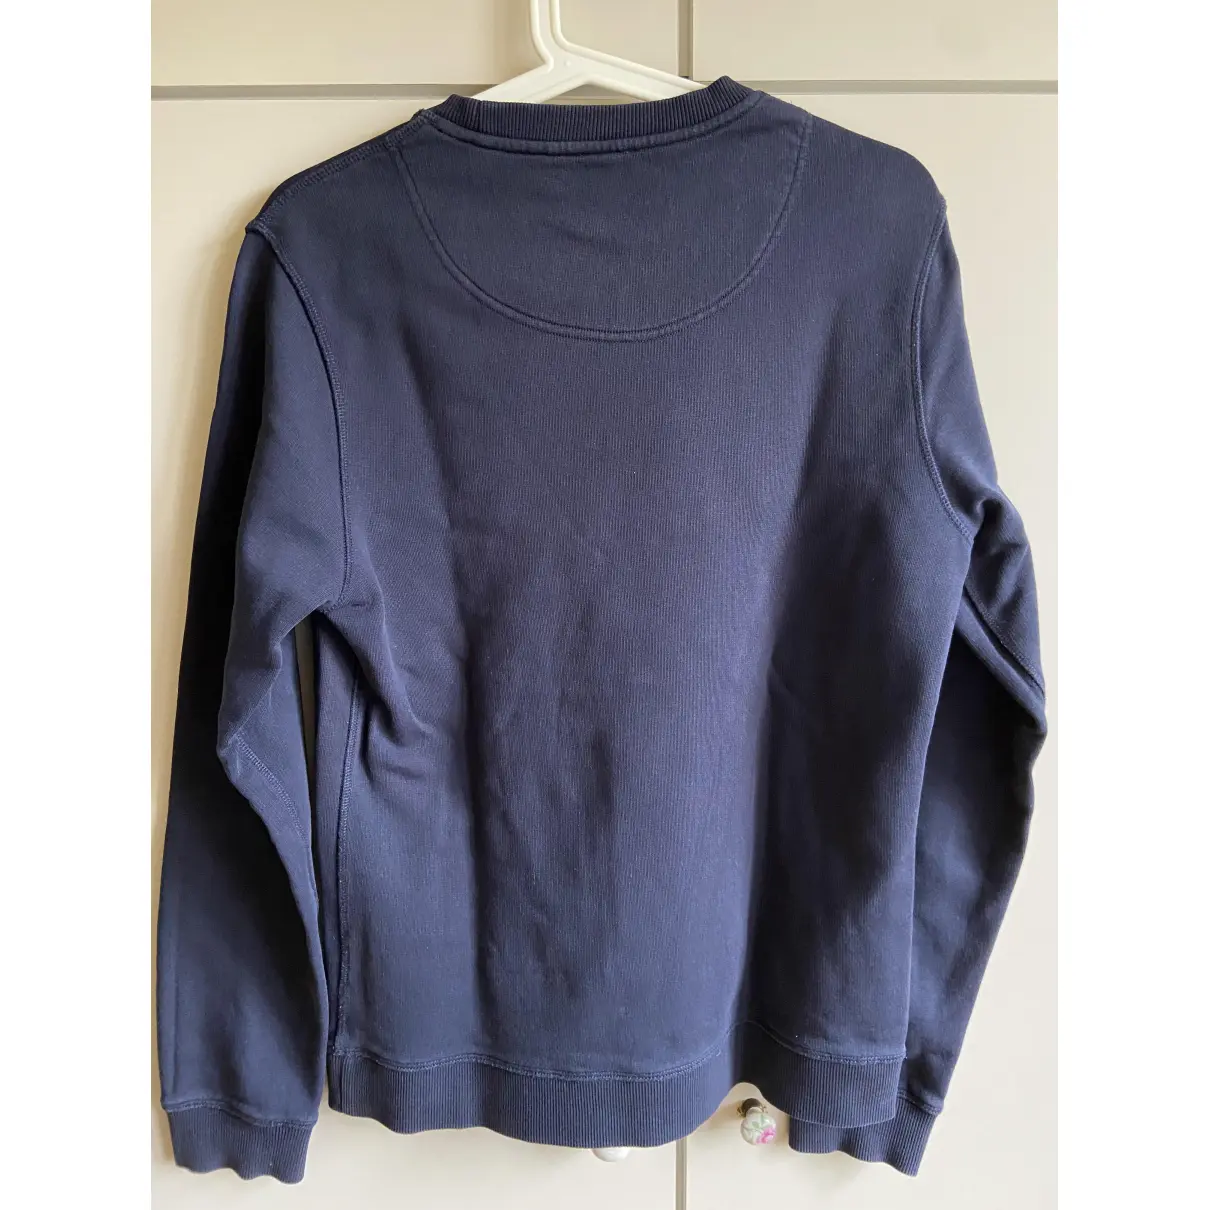 Buy Kenzo Navy Cotton Knitwear & Sweatshirt online